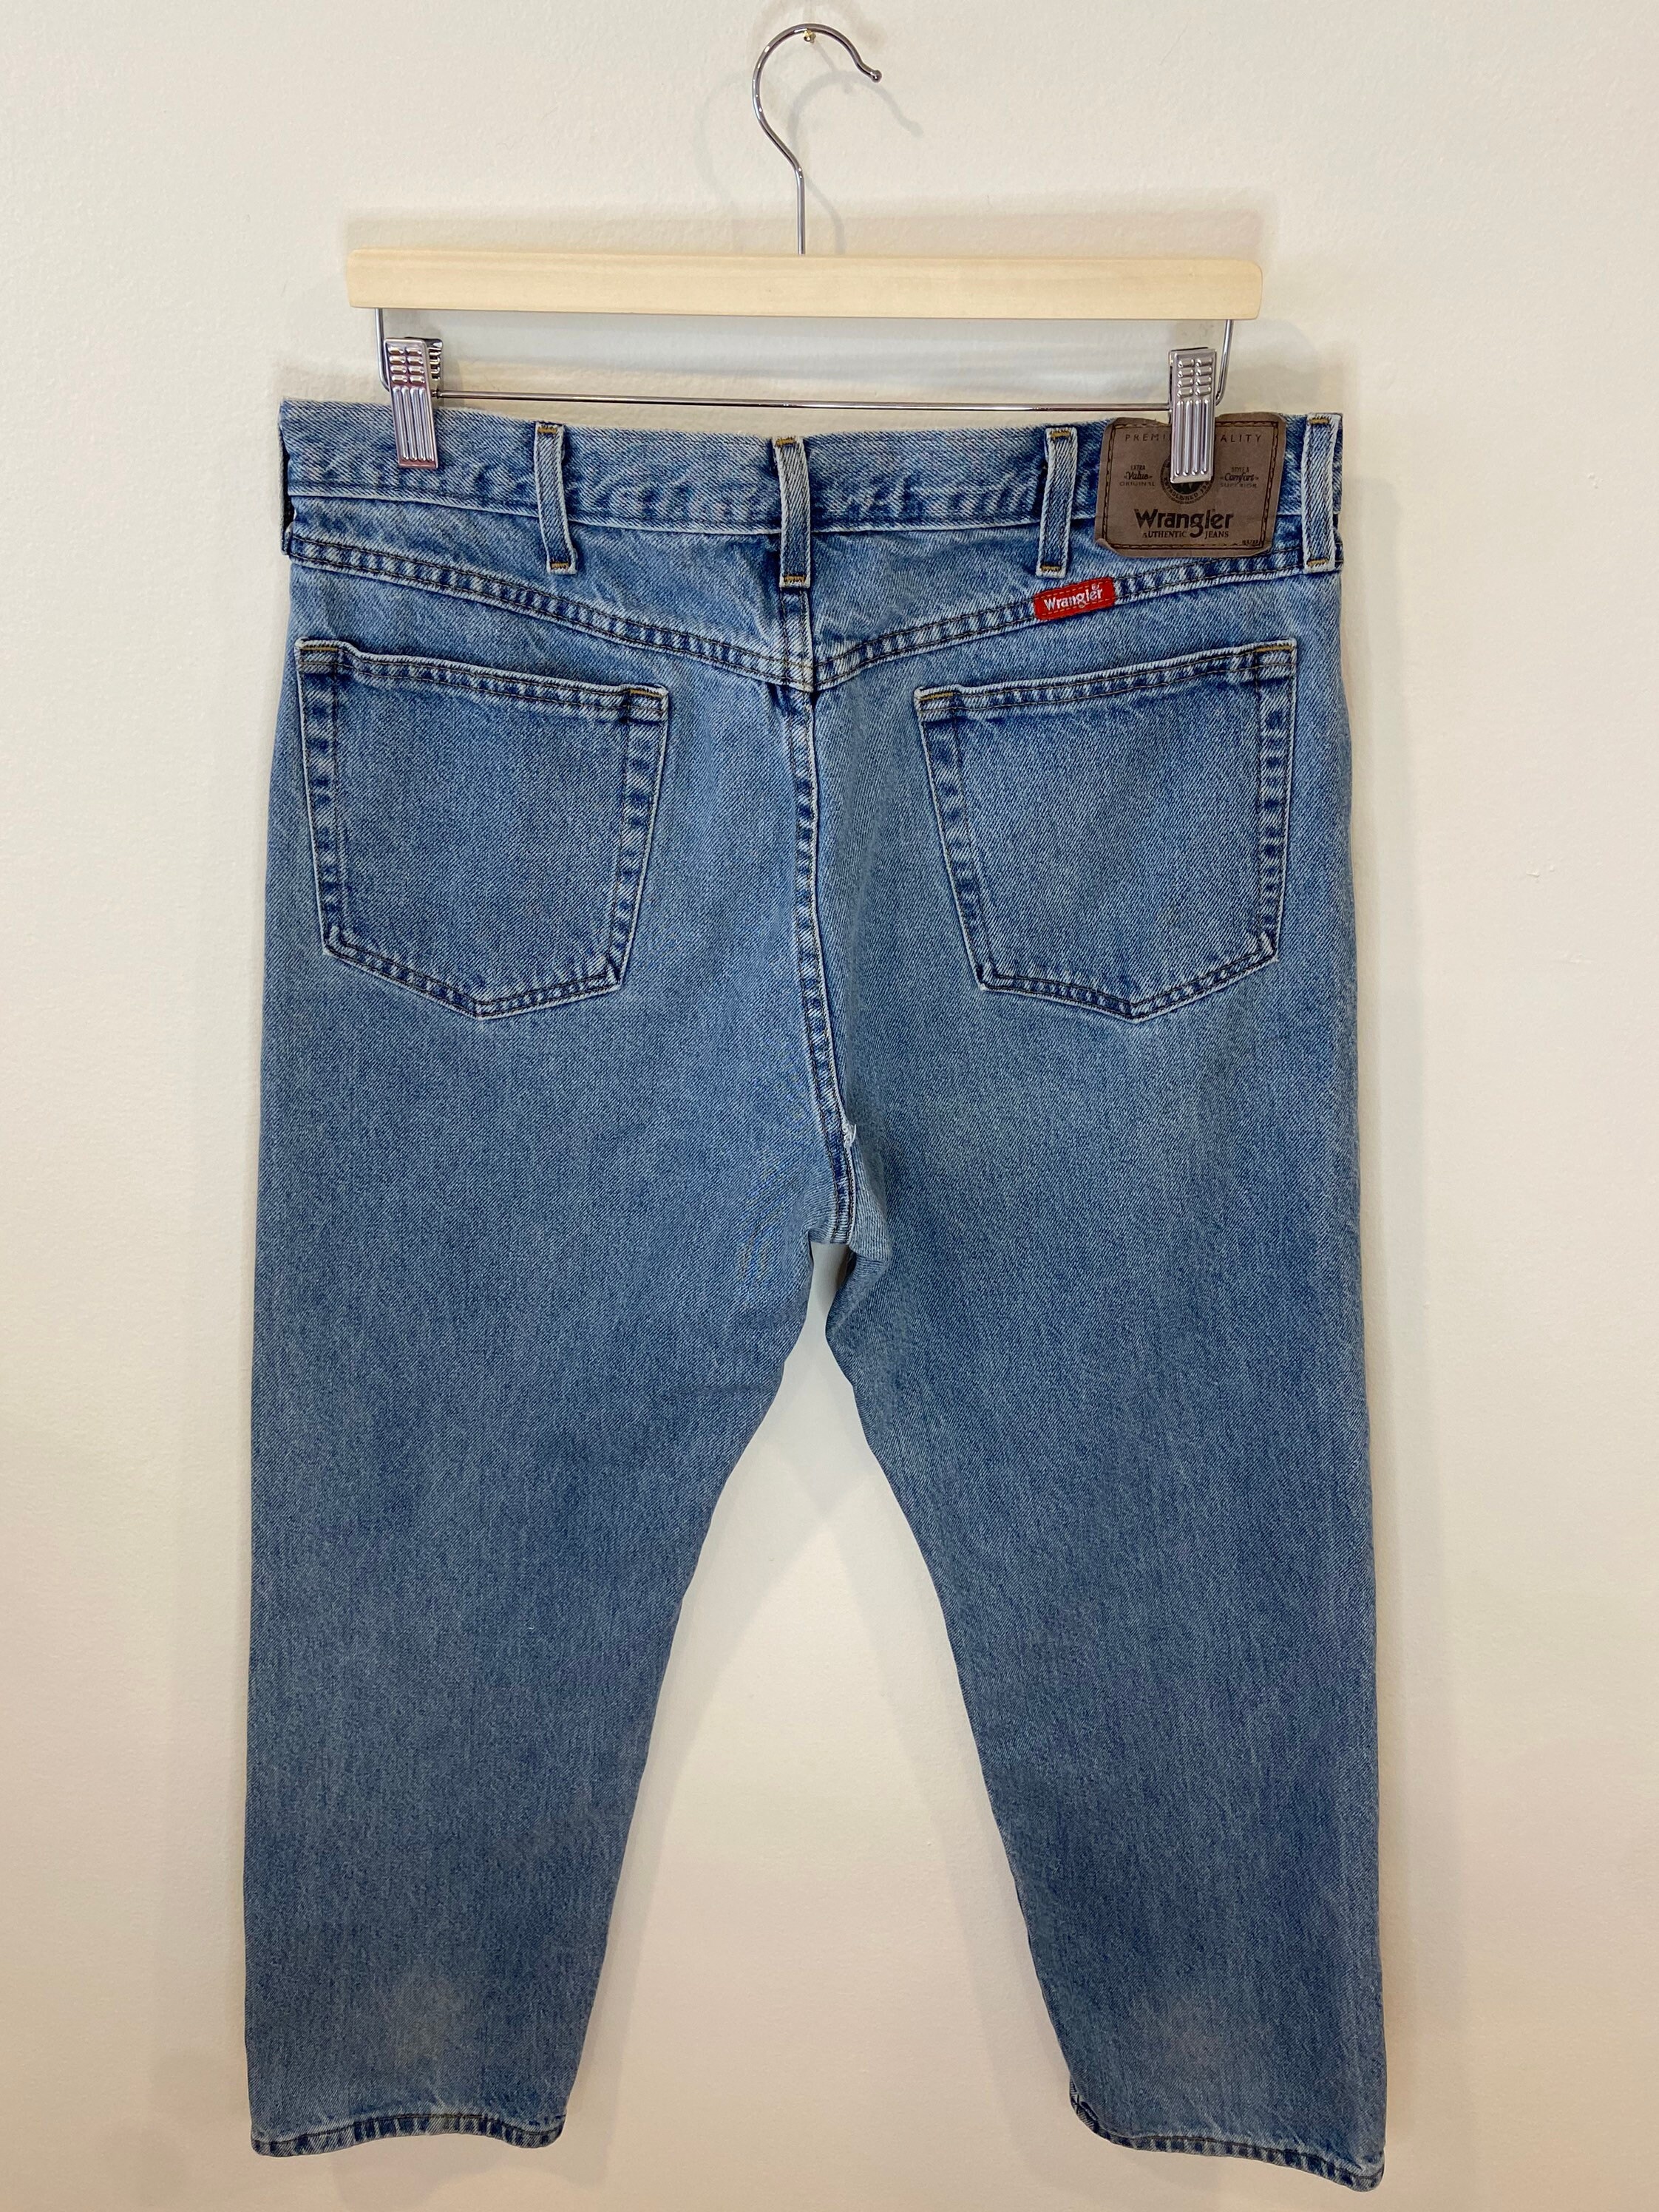 Vintage Wrangler Jeans Size W36 L30 Vintage Jeans Denim - Etsy